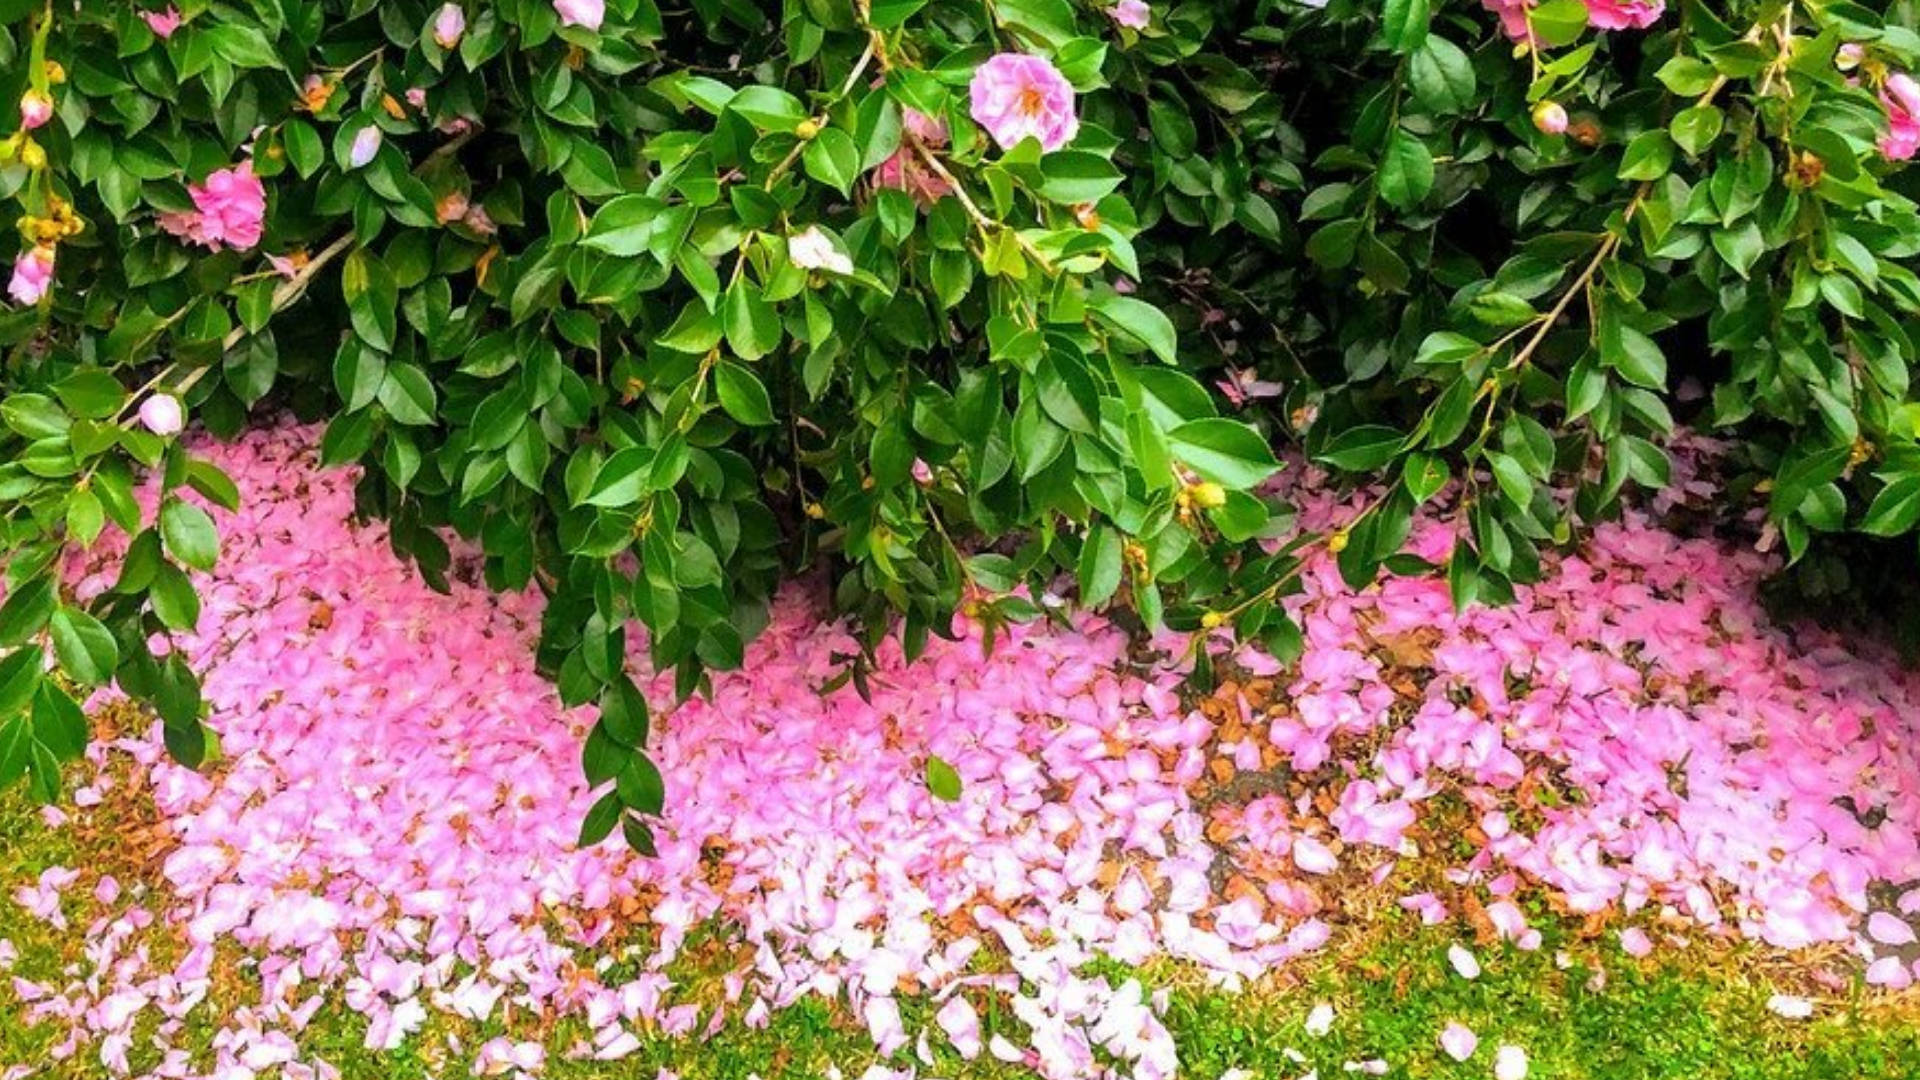 "A Moment of Beauty: Camellia Sasanqua with Fallen Petals" Wallpaper